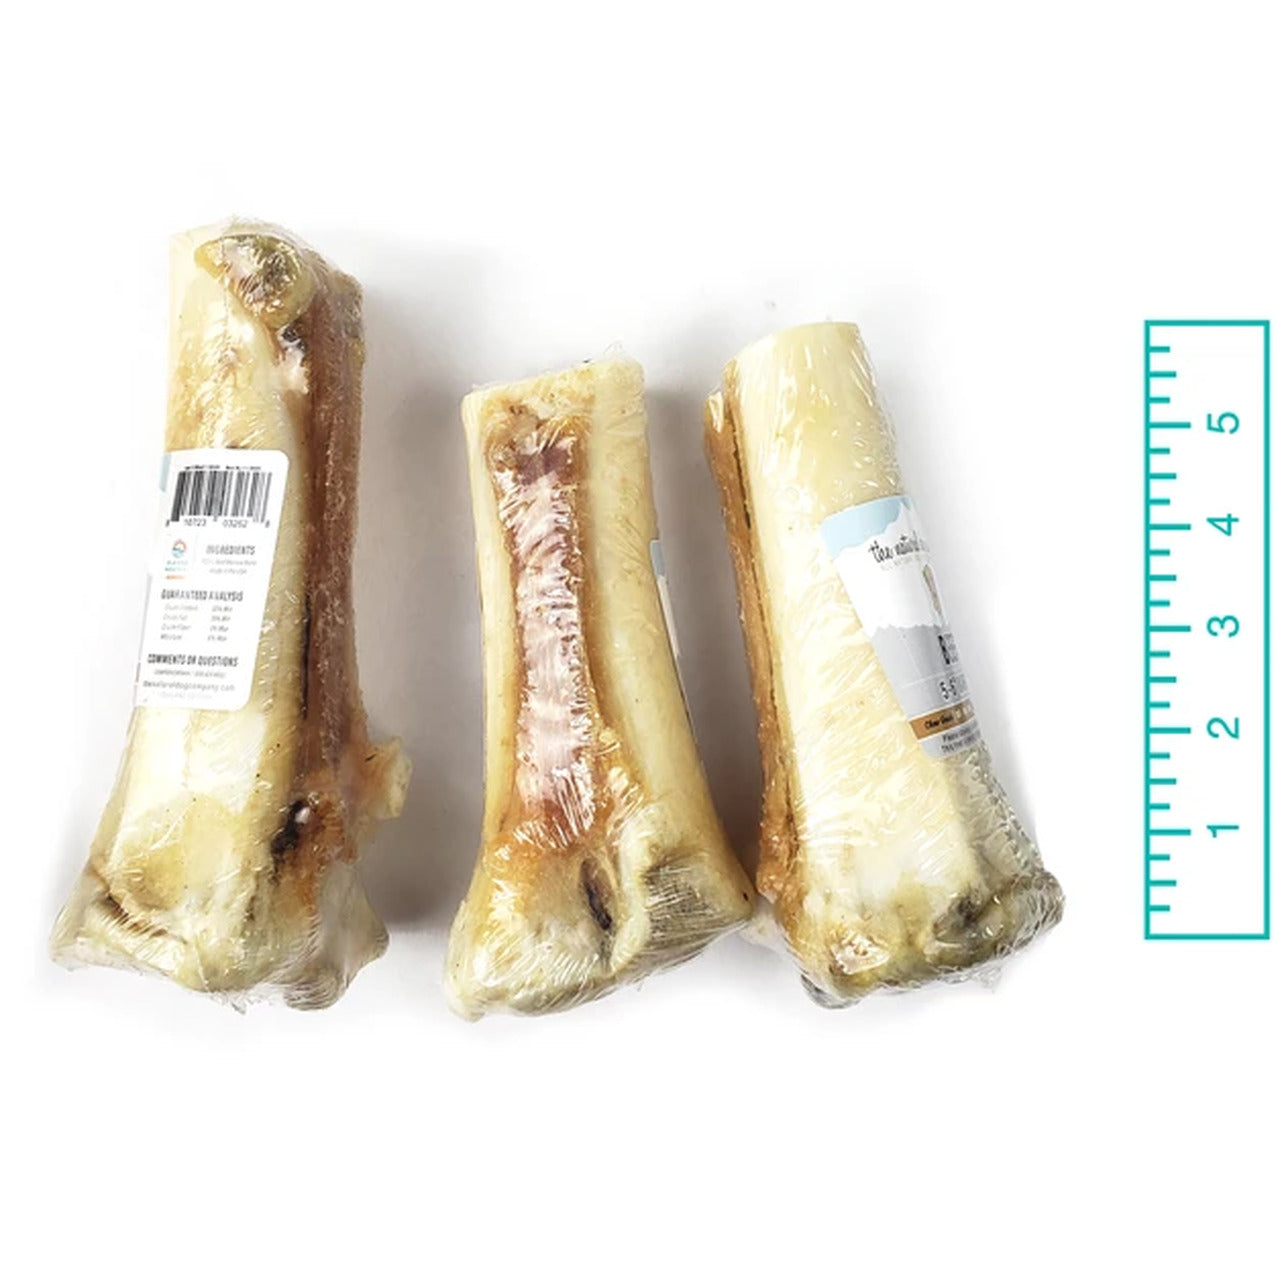 Tuesday's Natural Dog Company Beef Strap Marrow Bone Dog Treat